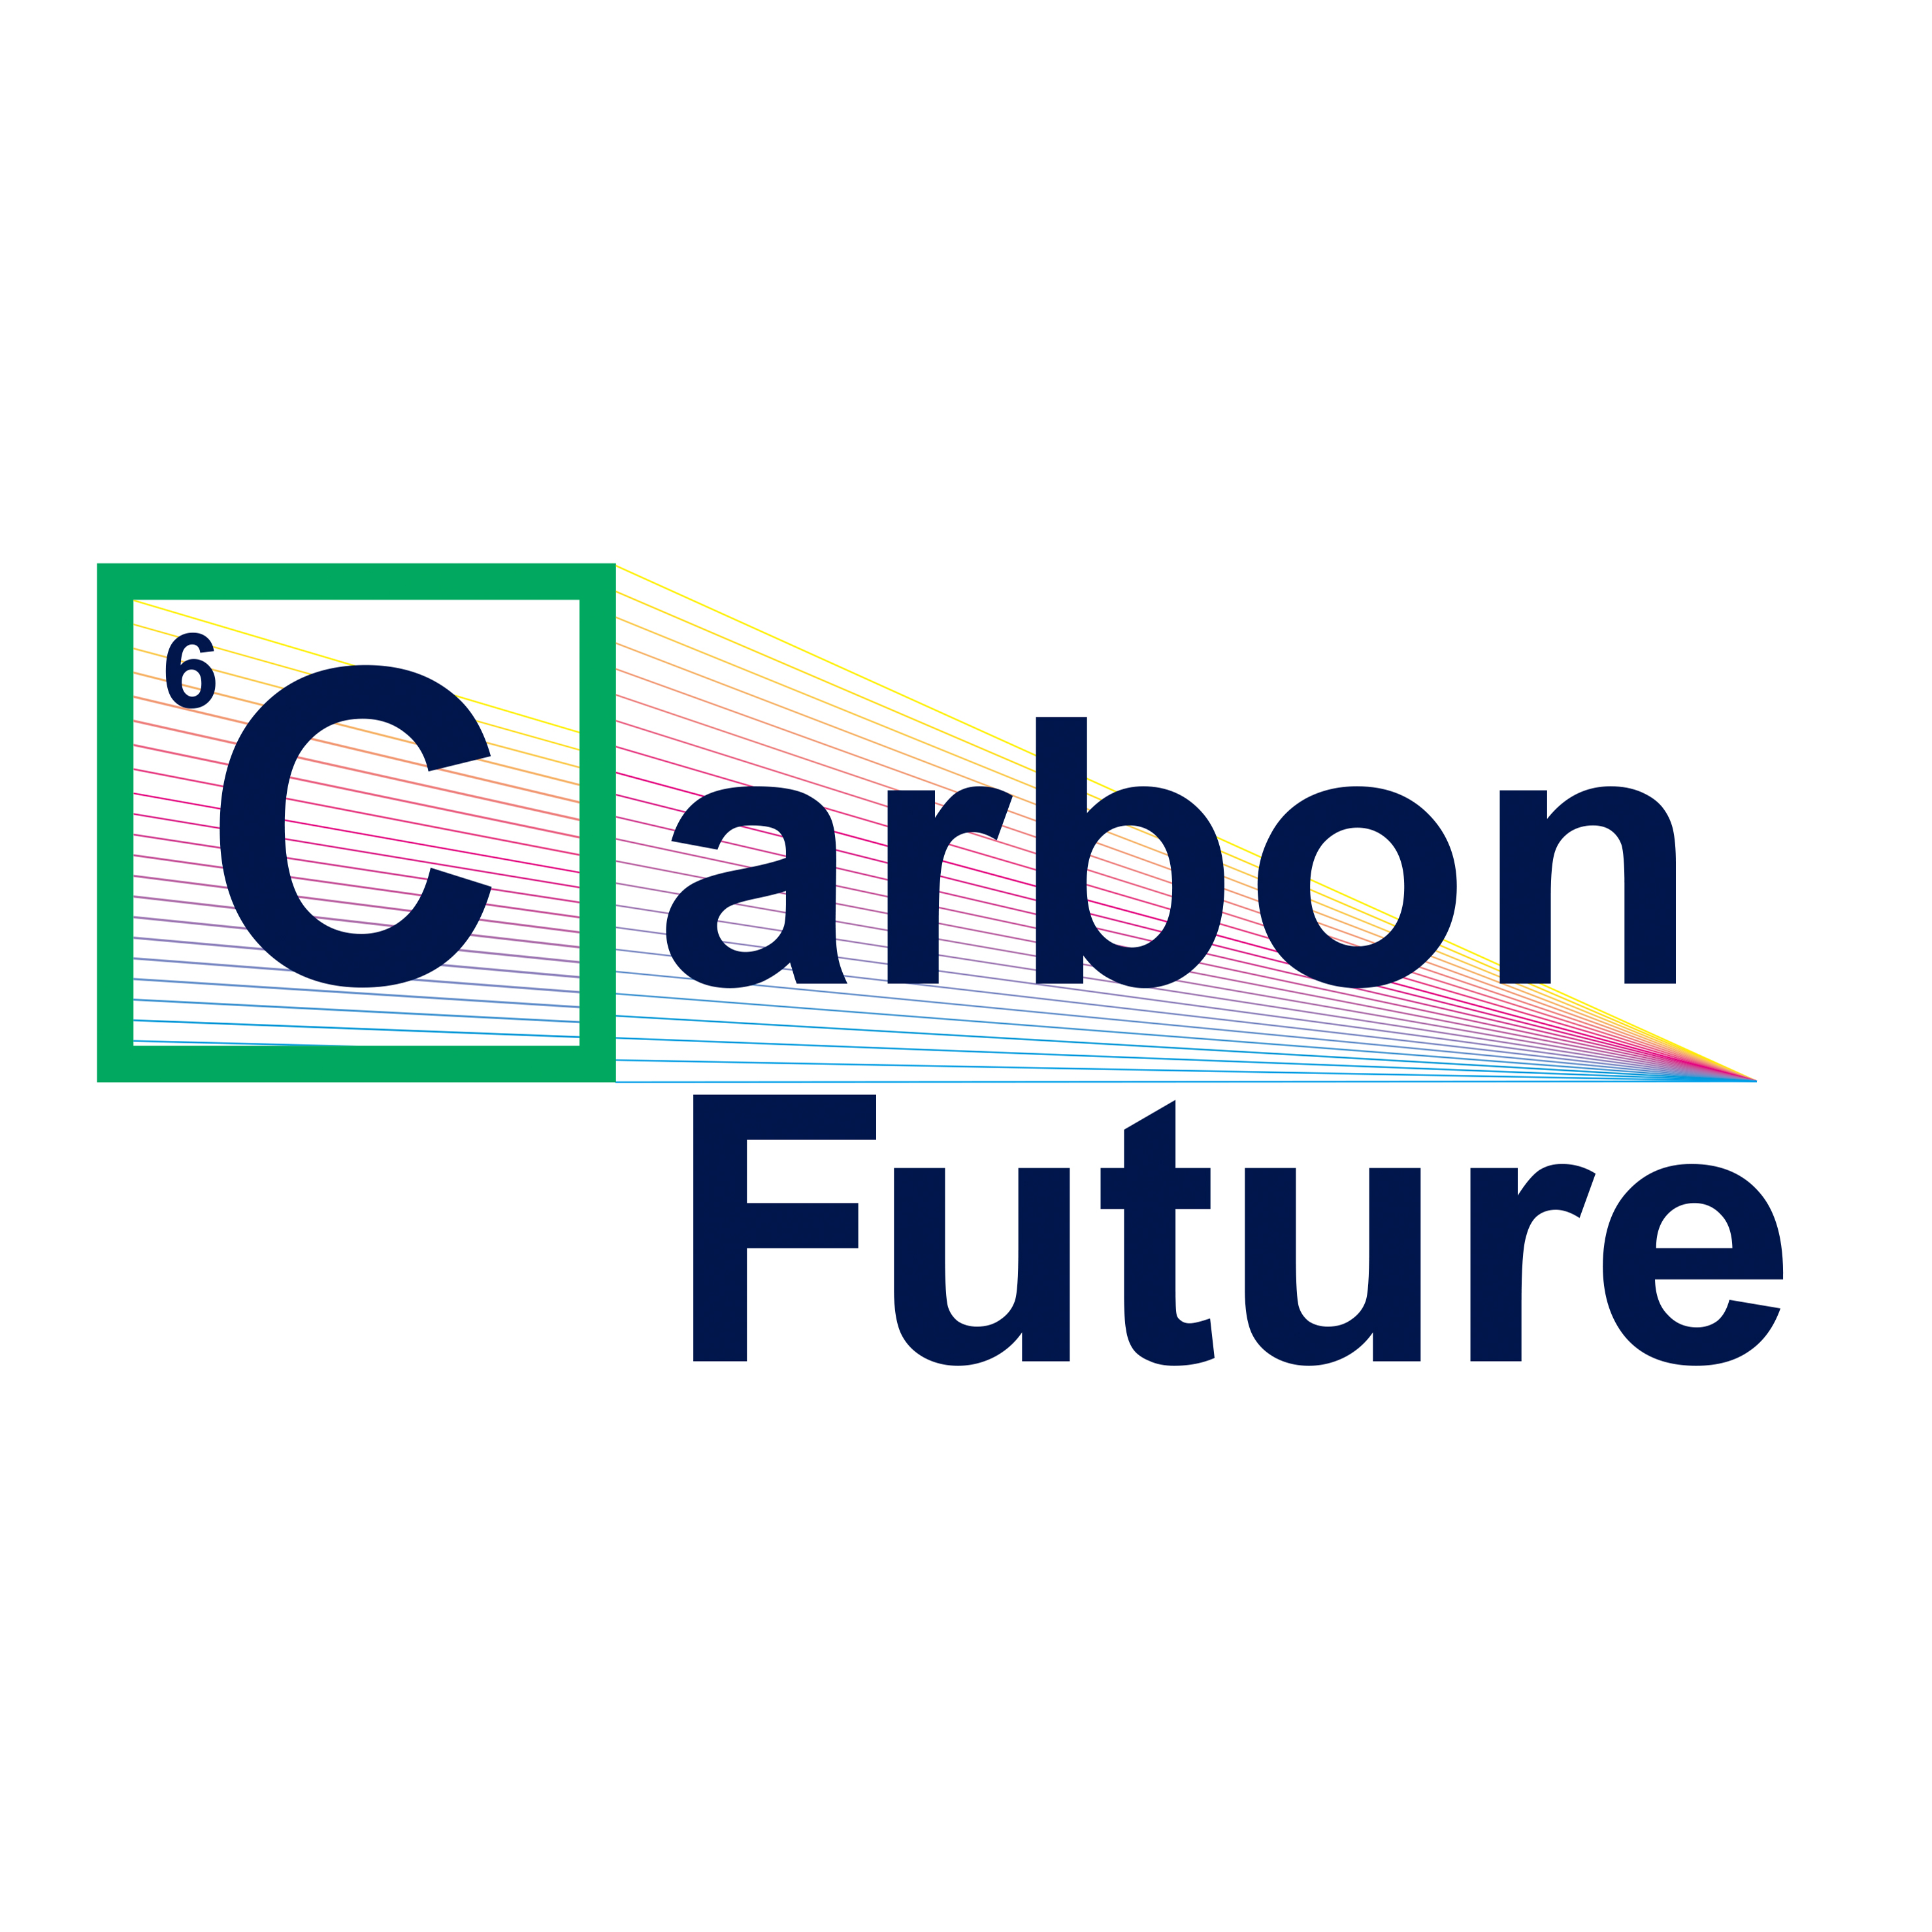 Carbon Future